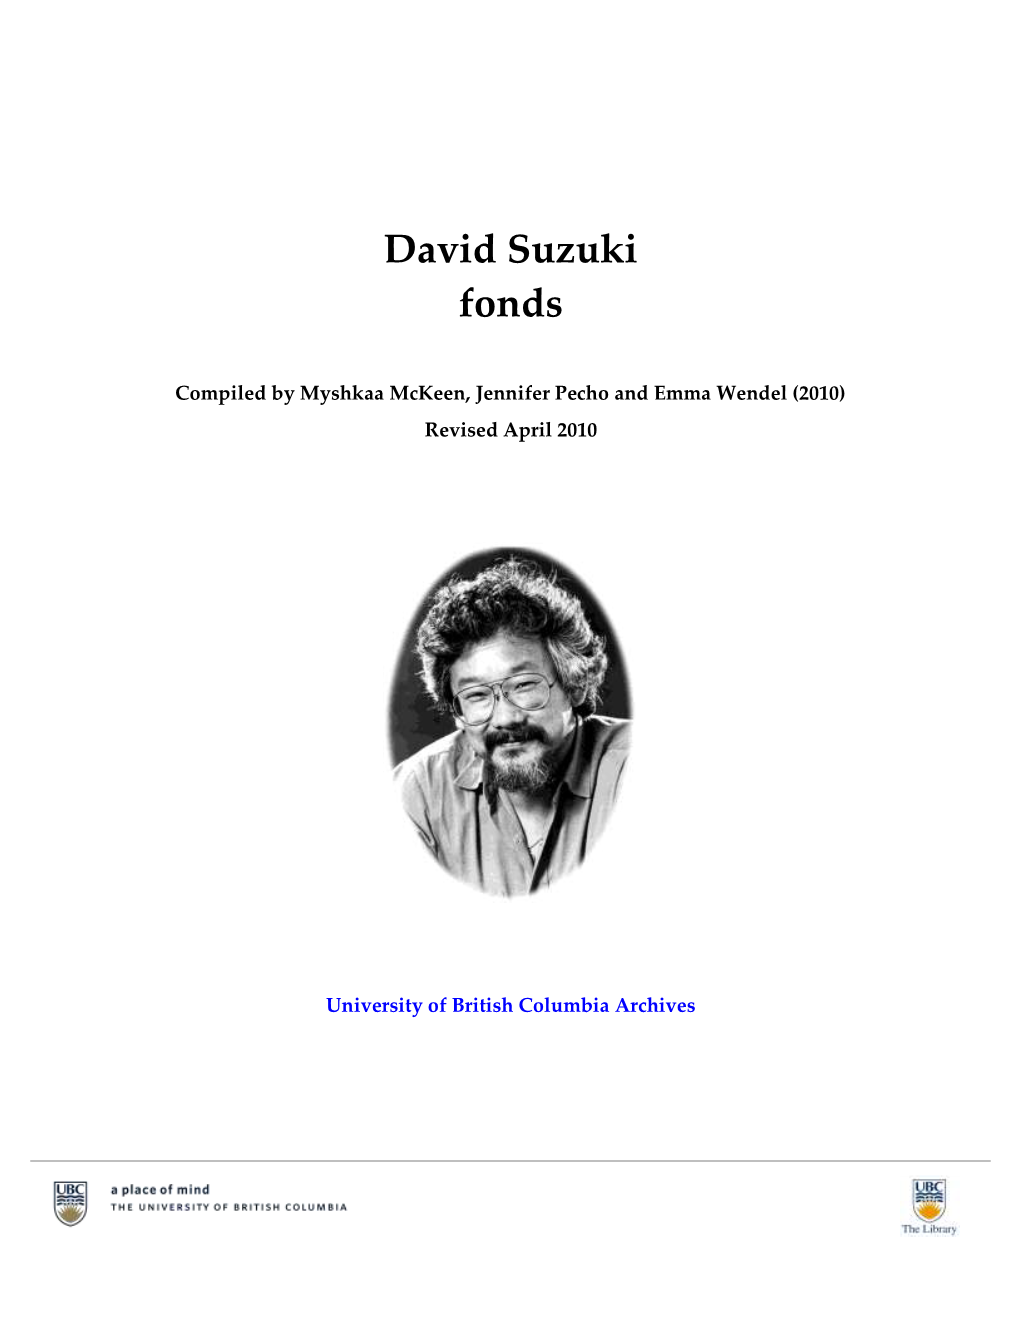 David Suzuki Fonds